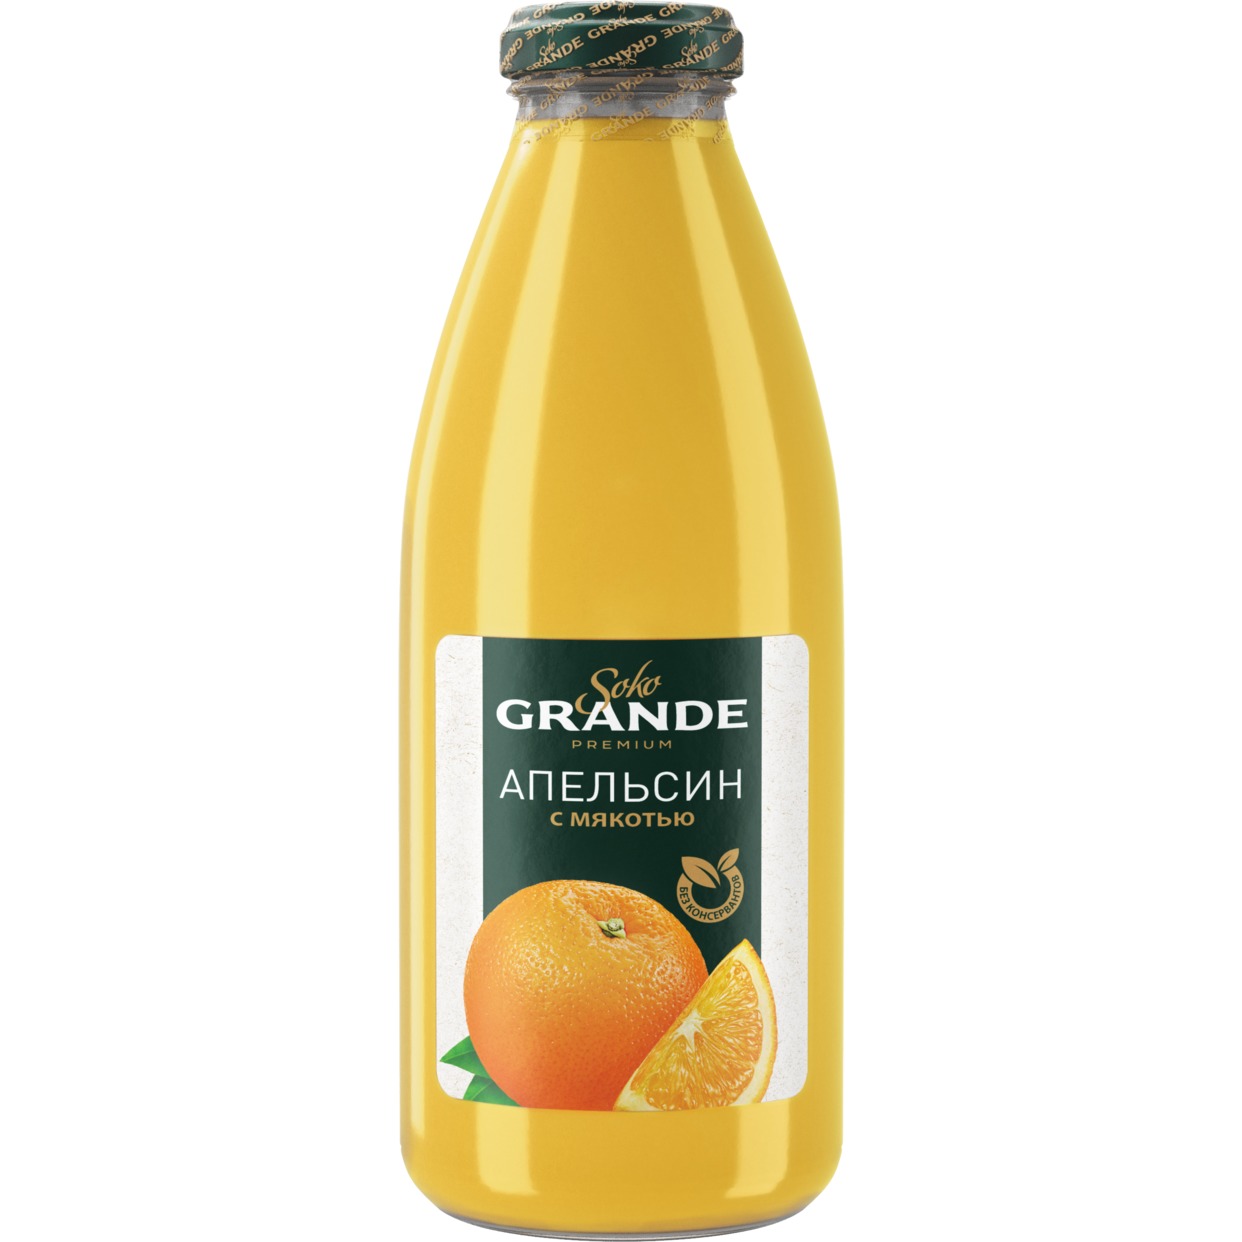 Сок апельсиновый восстановленный с сахаром с мякостью "Soko Grande" 0,75 л по акции в Пятерочке